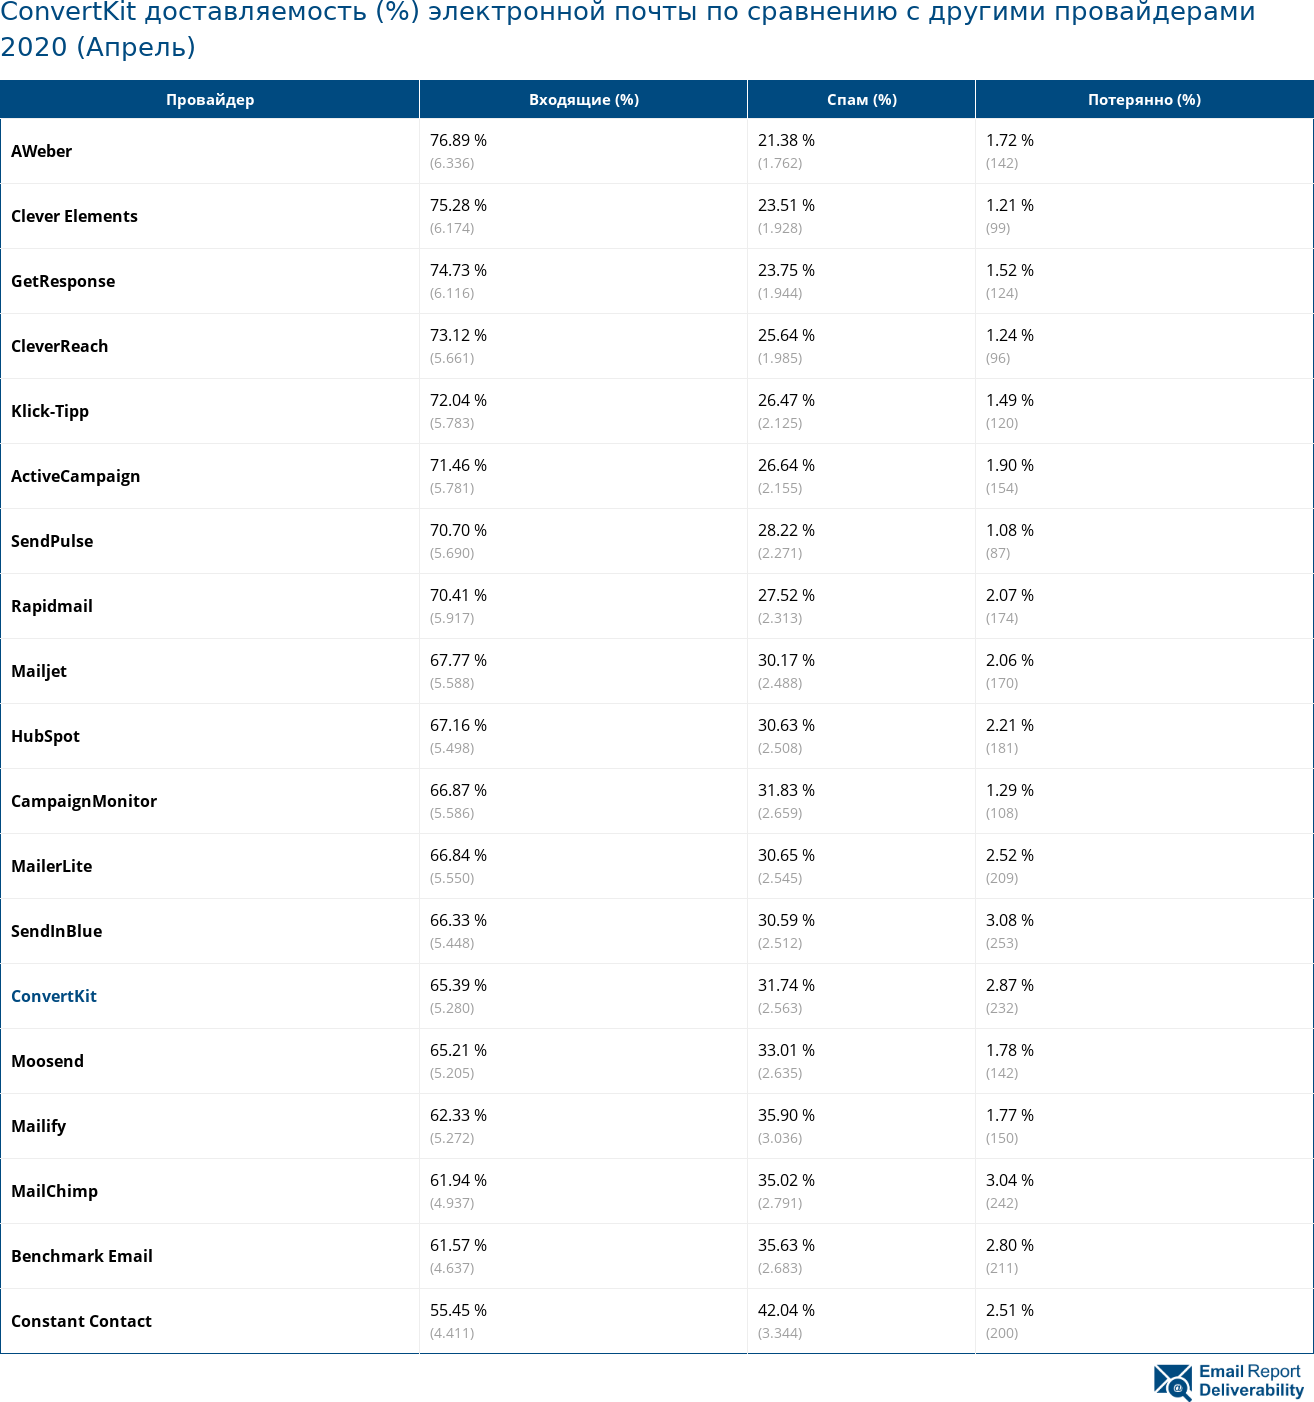 ConvertKit доставляемость (%) электронной почты по сравнению с другими провайдерами 2020 (Апрель)